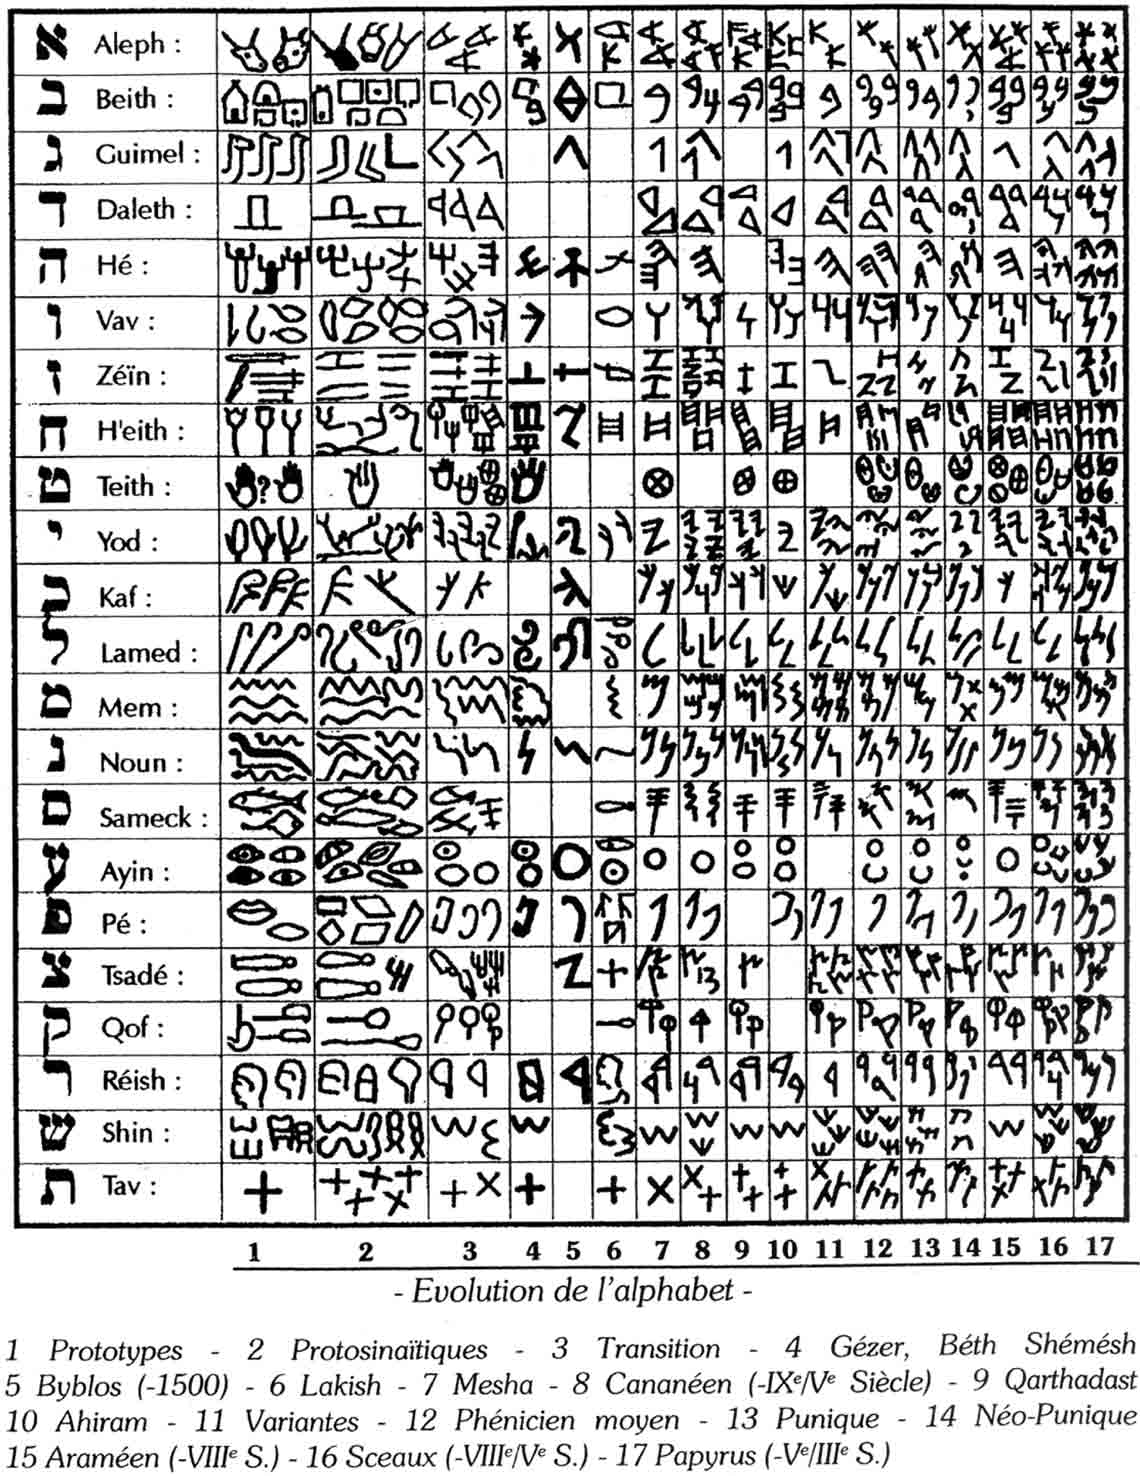 Évolution de l’“Alphabet” hébreux